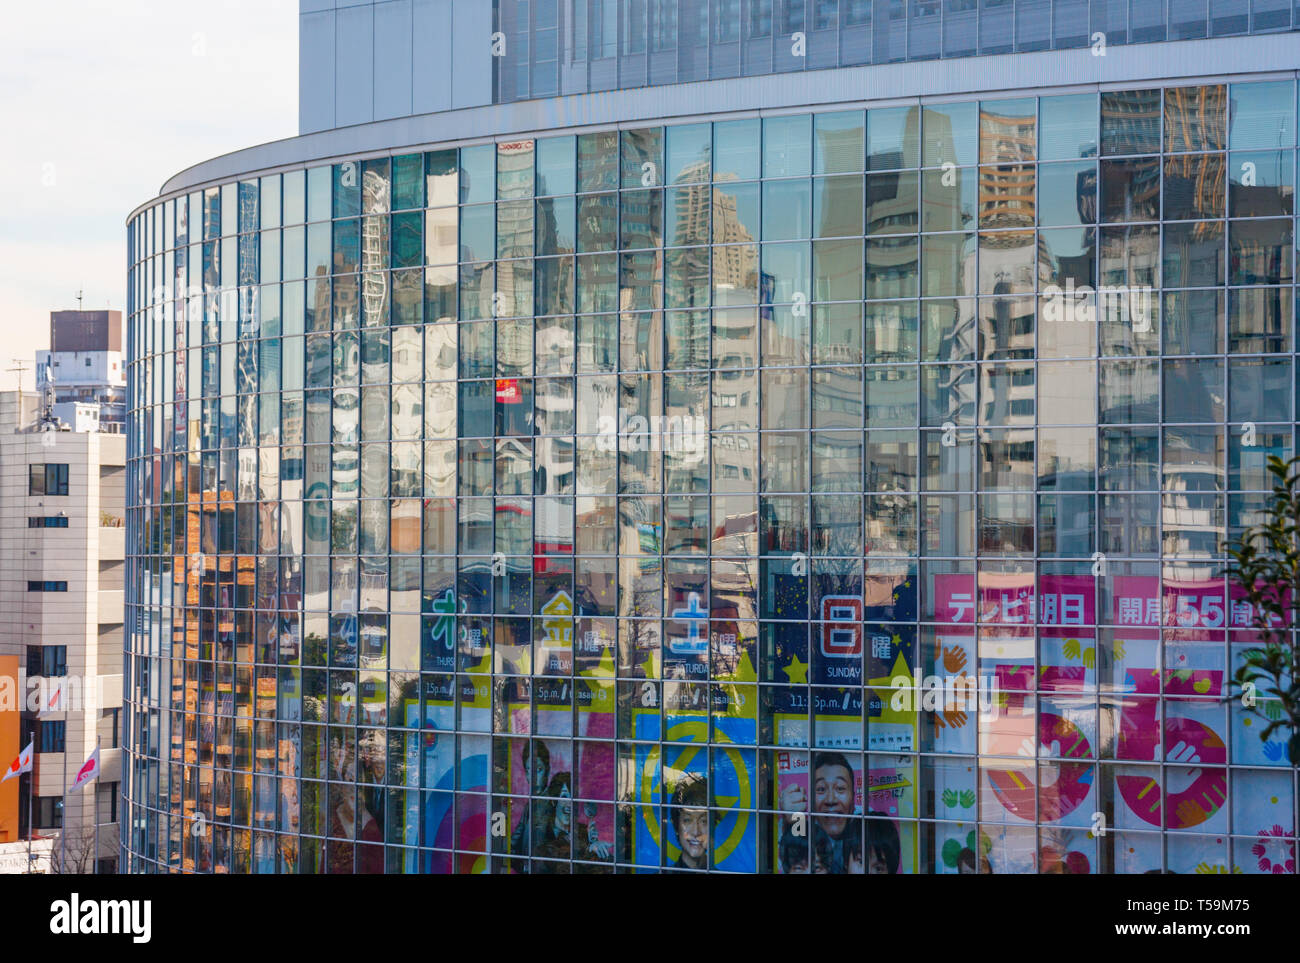 Les bâtiments de l'arrondissement de Roppongi se reflétant dans la façade en verre de TV Asahi siège. TV Asahi est un réseau de télévision japonais. Tokyo, Japon. Banque D'Images